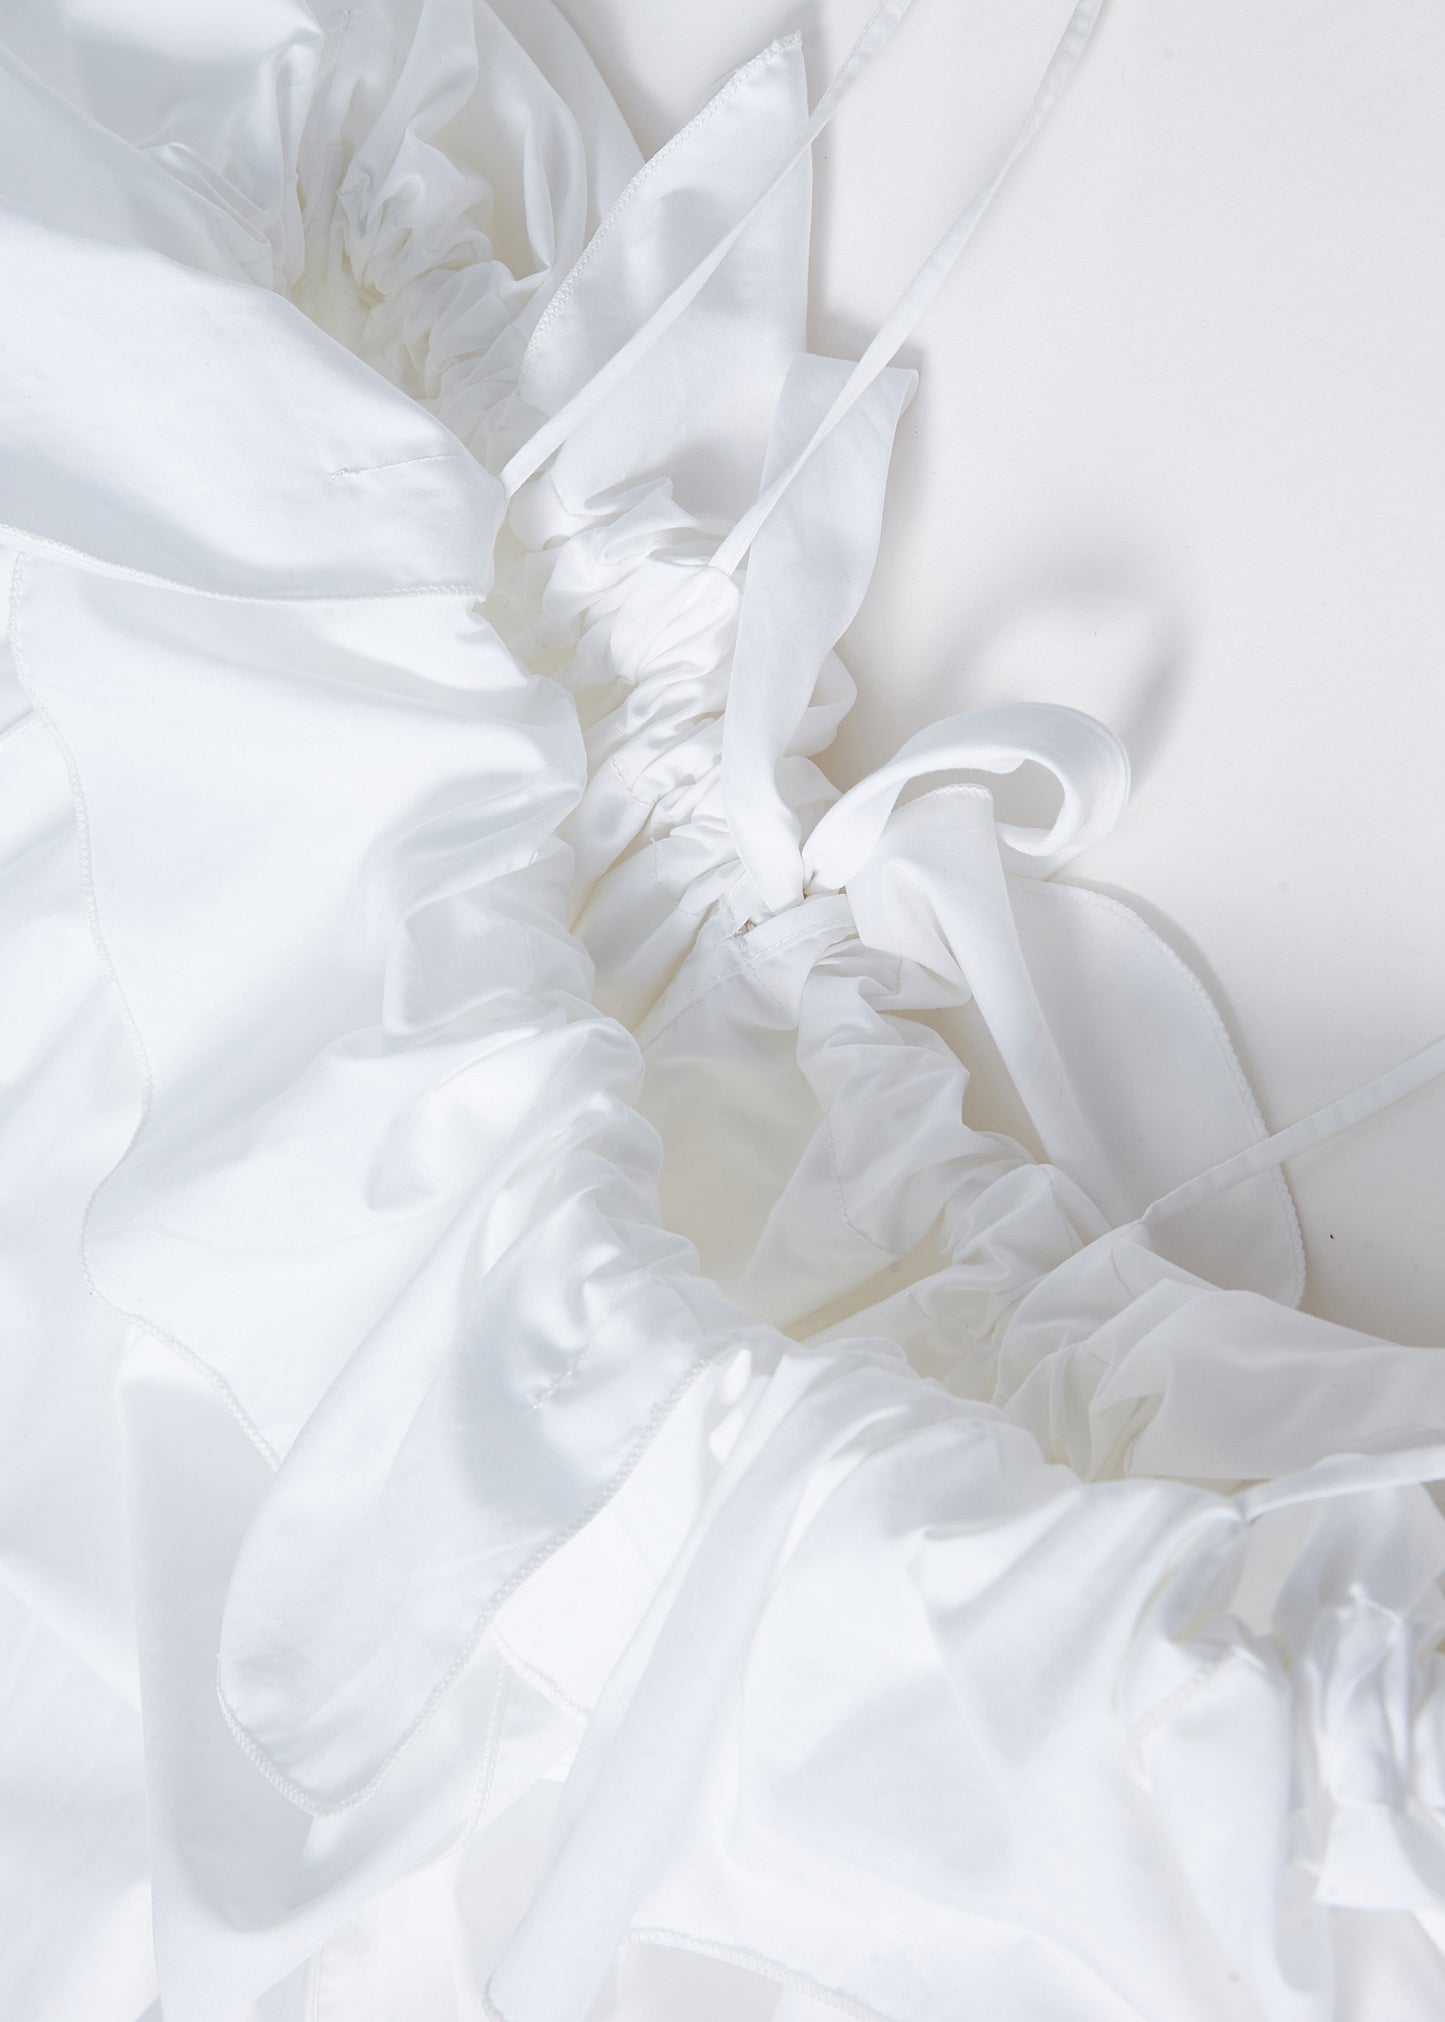 Villea Dress in White Cotton